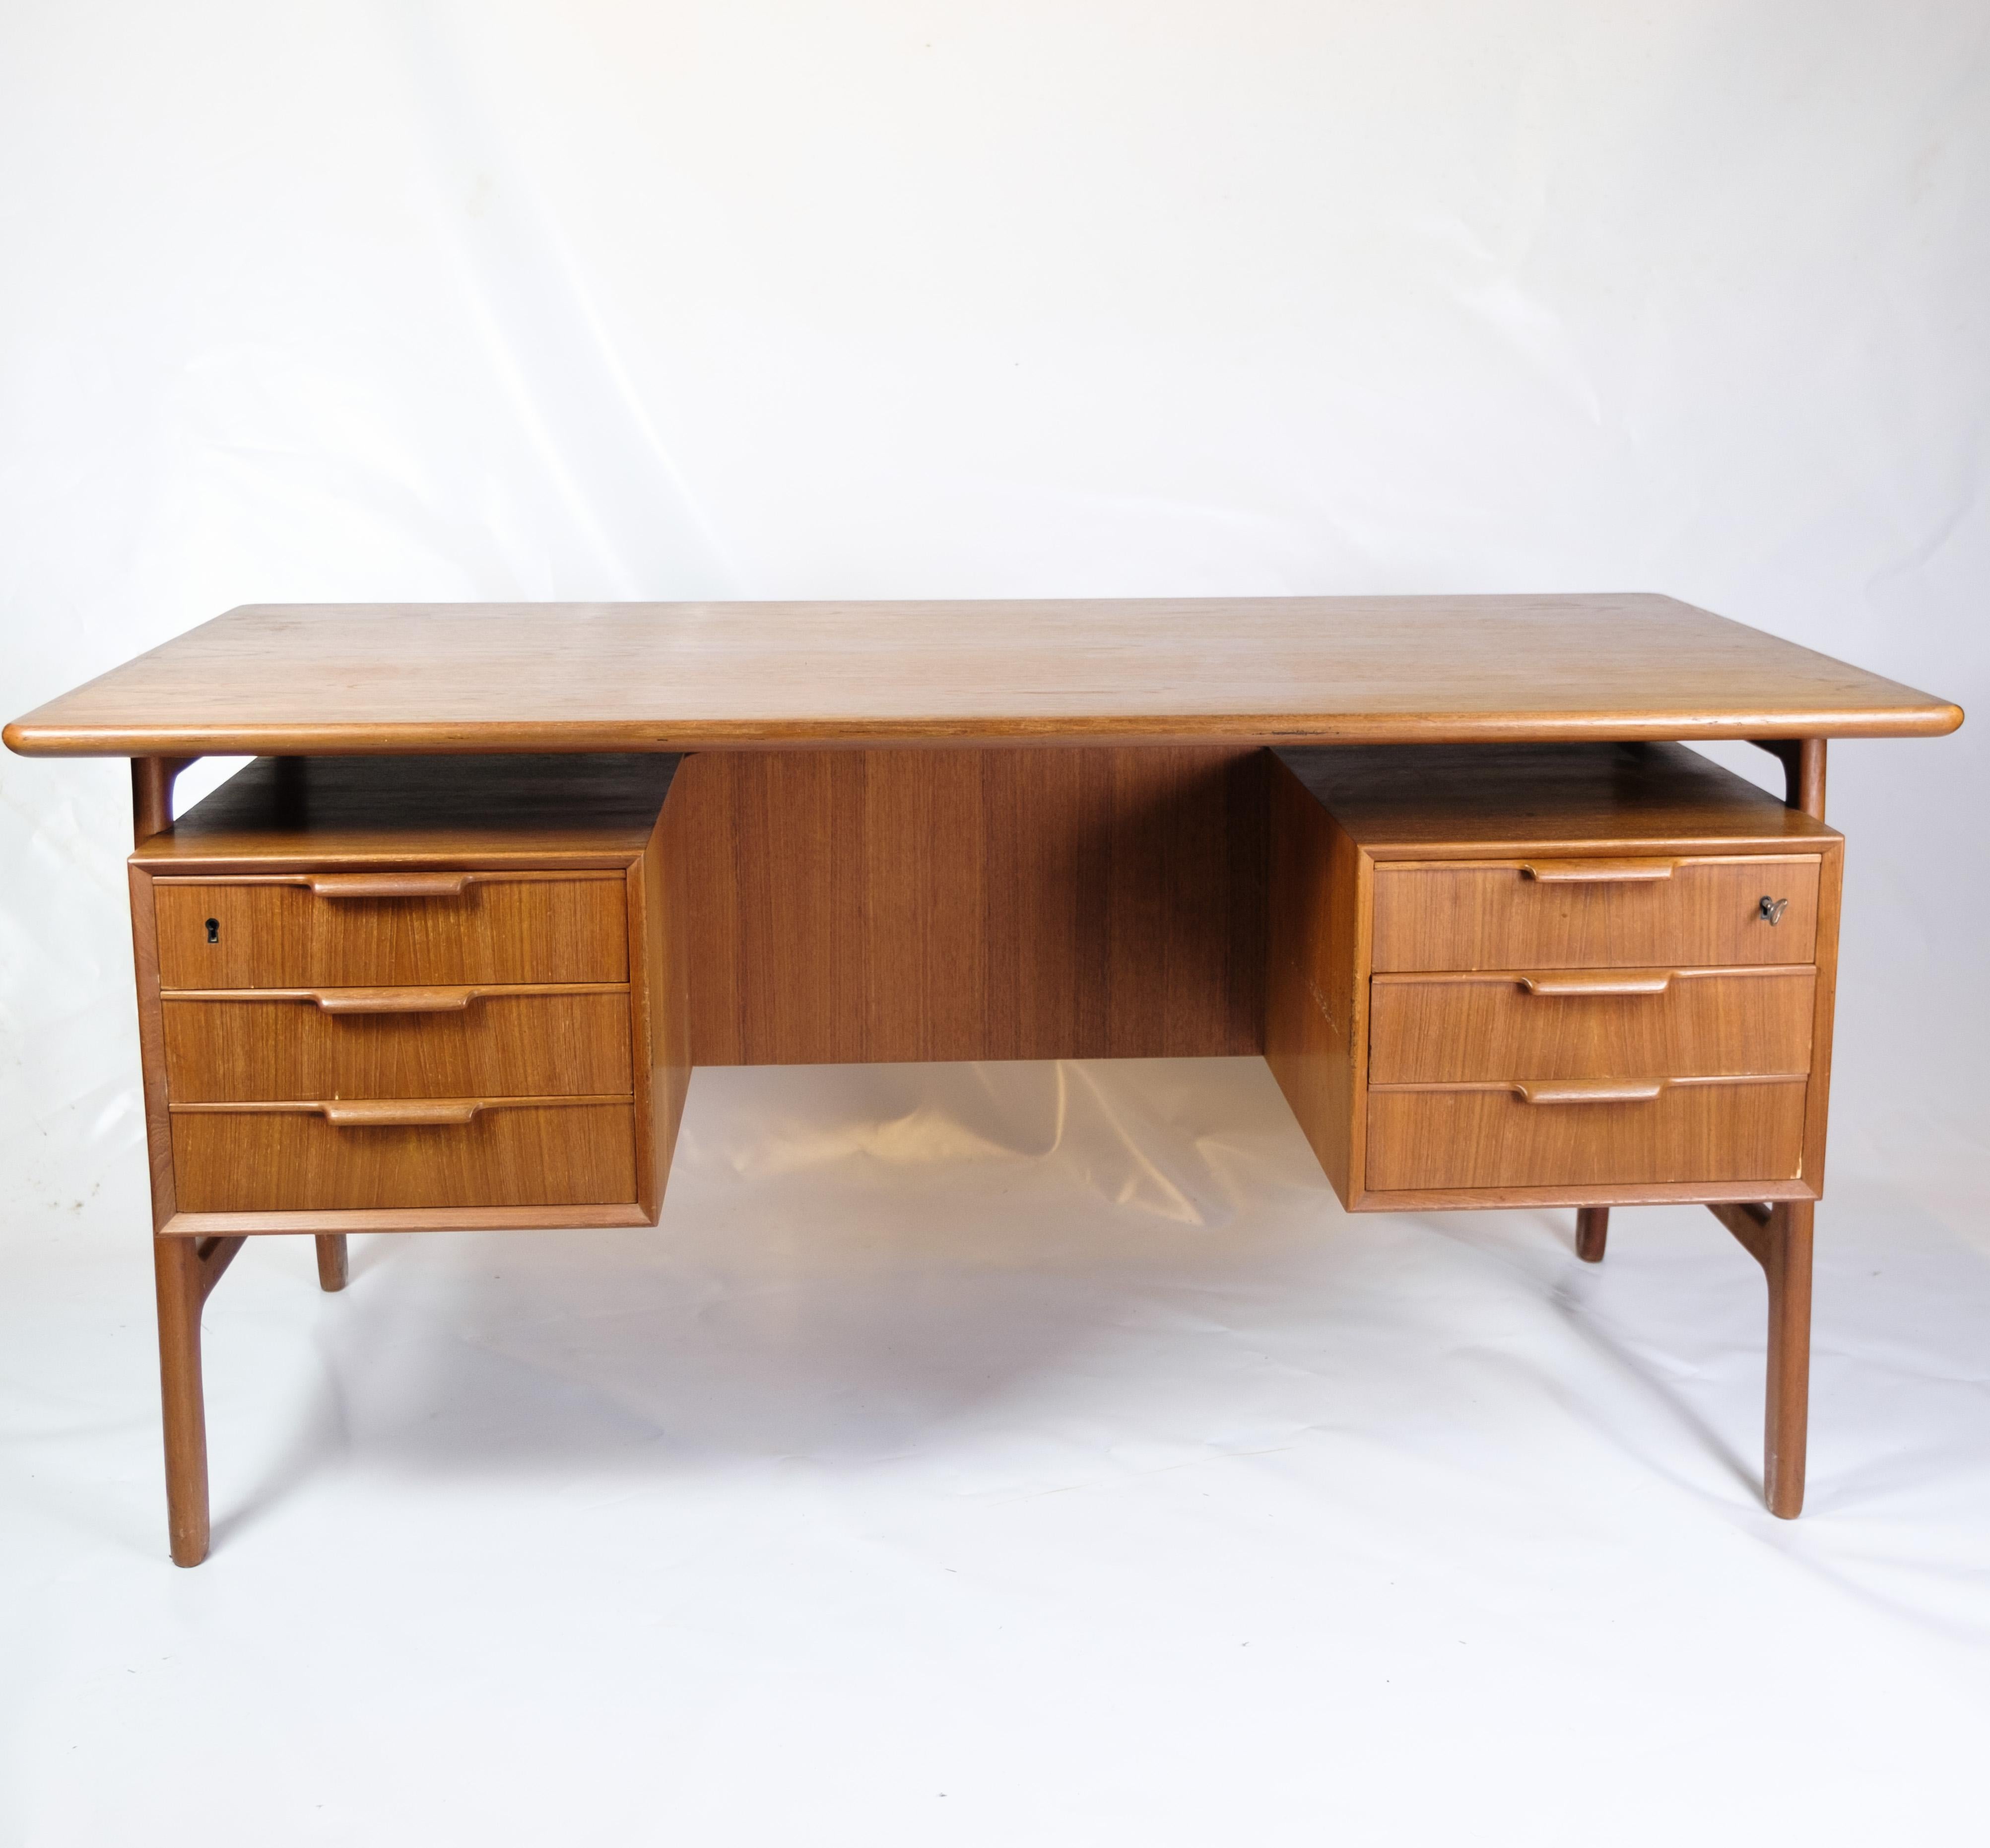 Dieser Schreibtisch, bekannt als Modell 75, ist ein hervorragendes Beispiel für dänisches Möbelhandwerk aus den 1960er Jahren. Der Schreibtisch wird von der Omann Junior Møbelfabrik hergestellt, einem renommierten Unternehmen mit einer langen